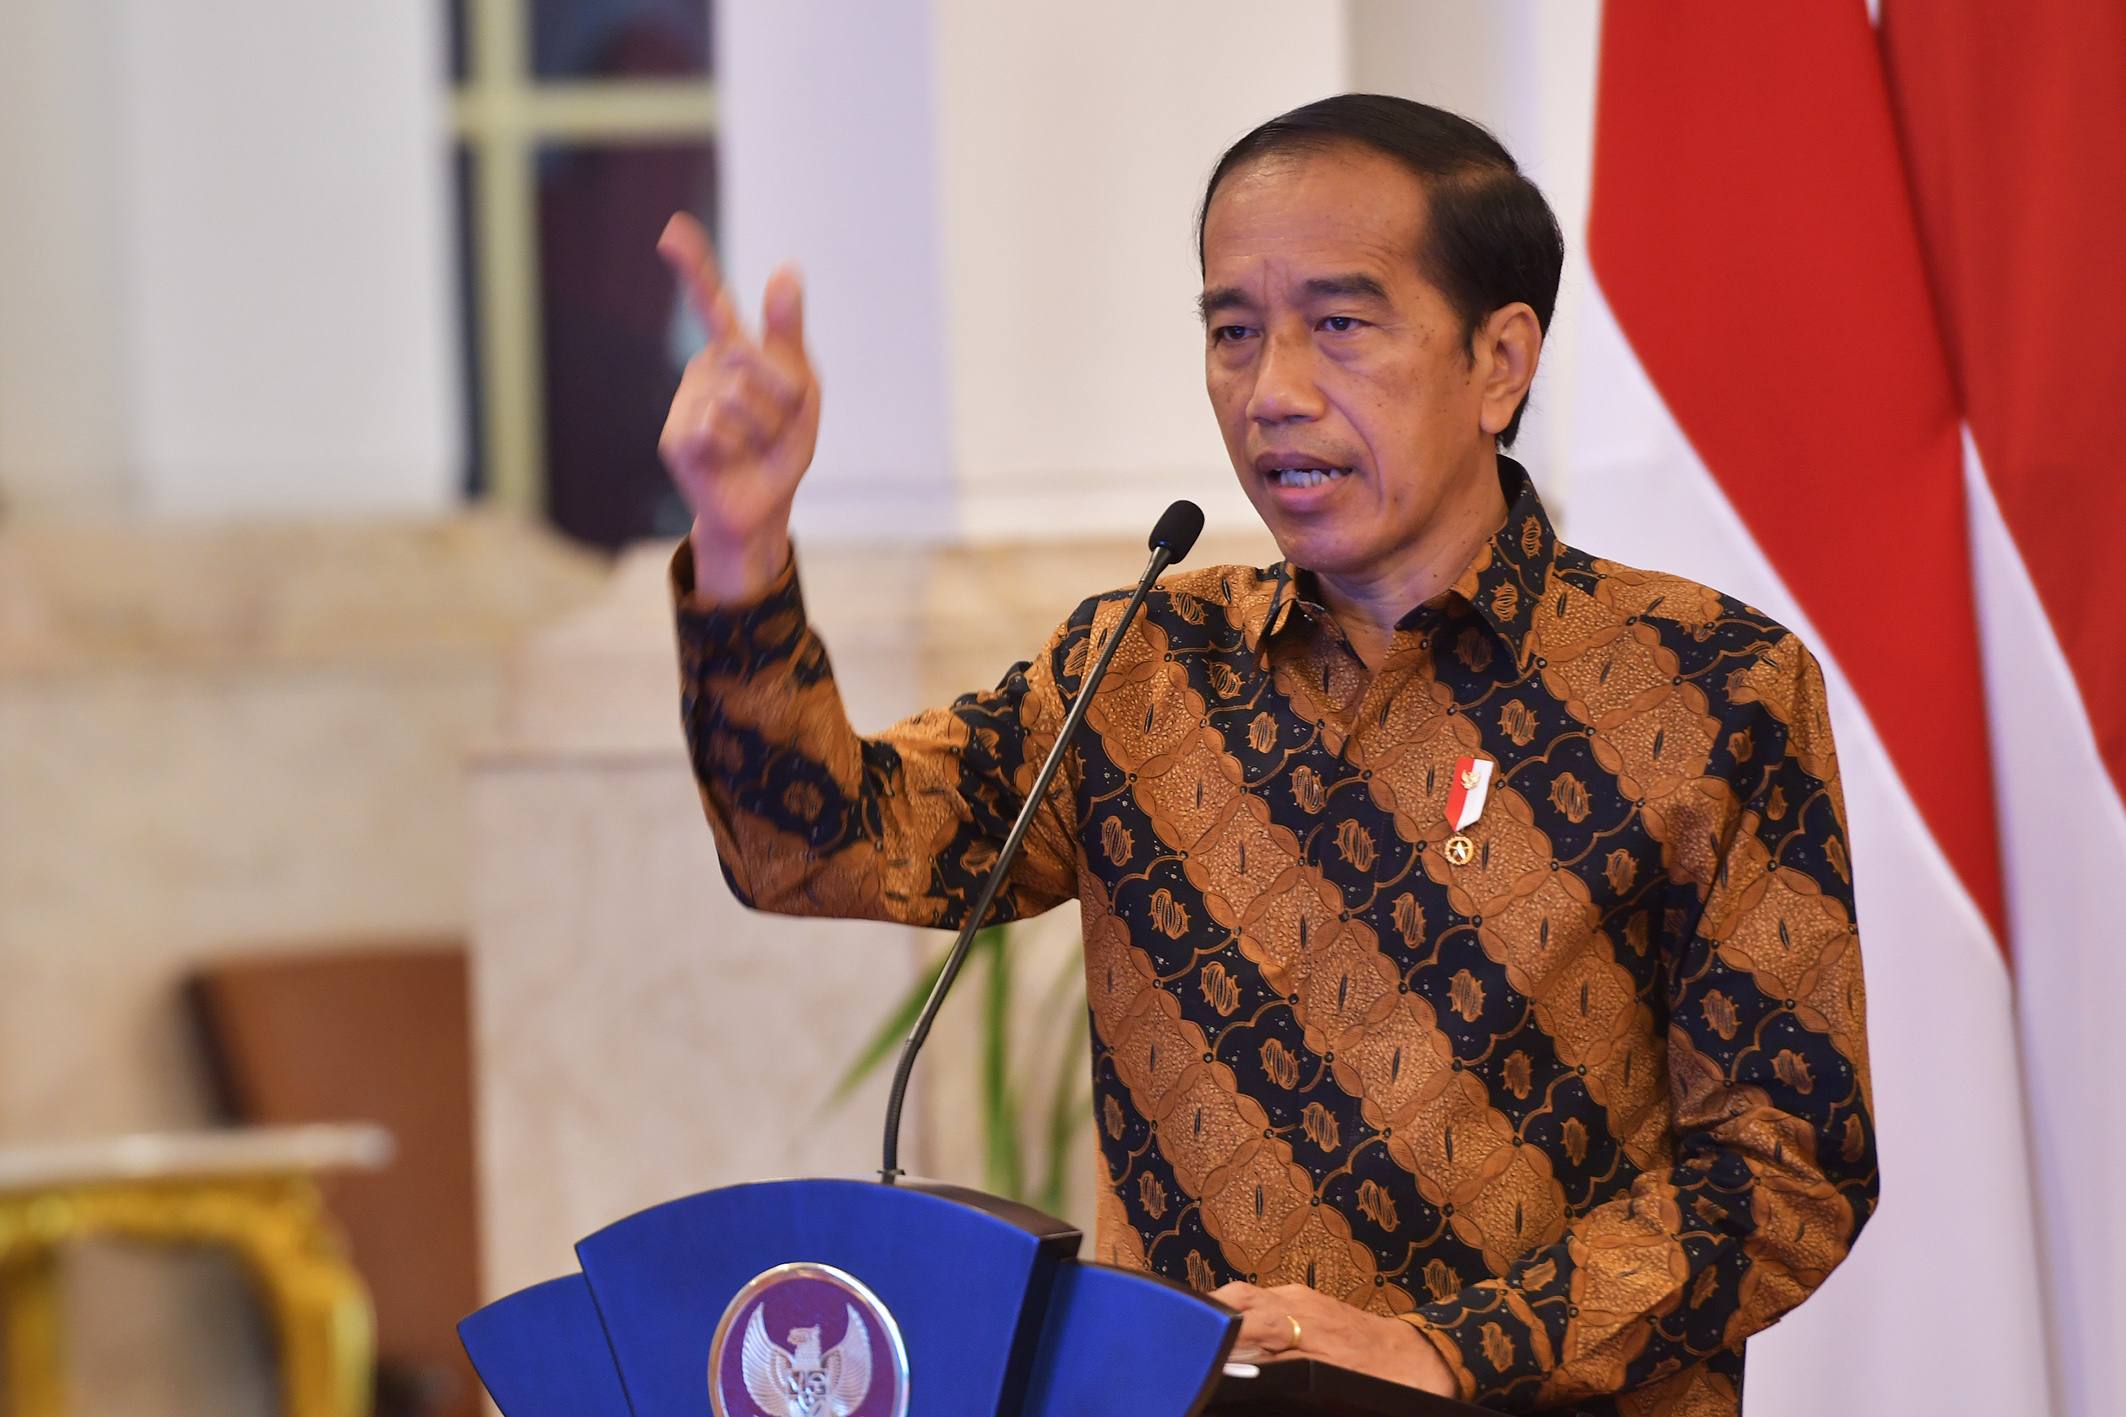 Sebut Pembangunan Rumah Ibadah di Beberapa Daerah Sulit, Jokowi: Semua Agama Punya Hak yang Sama